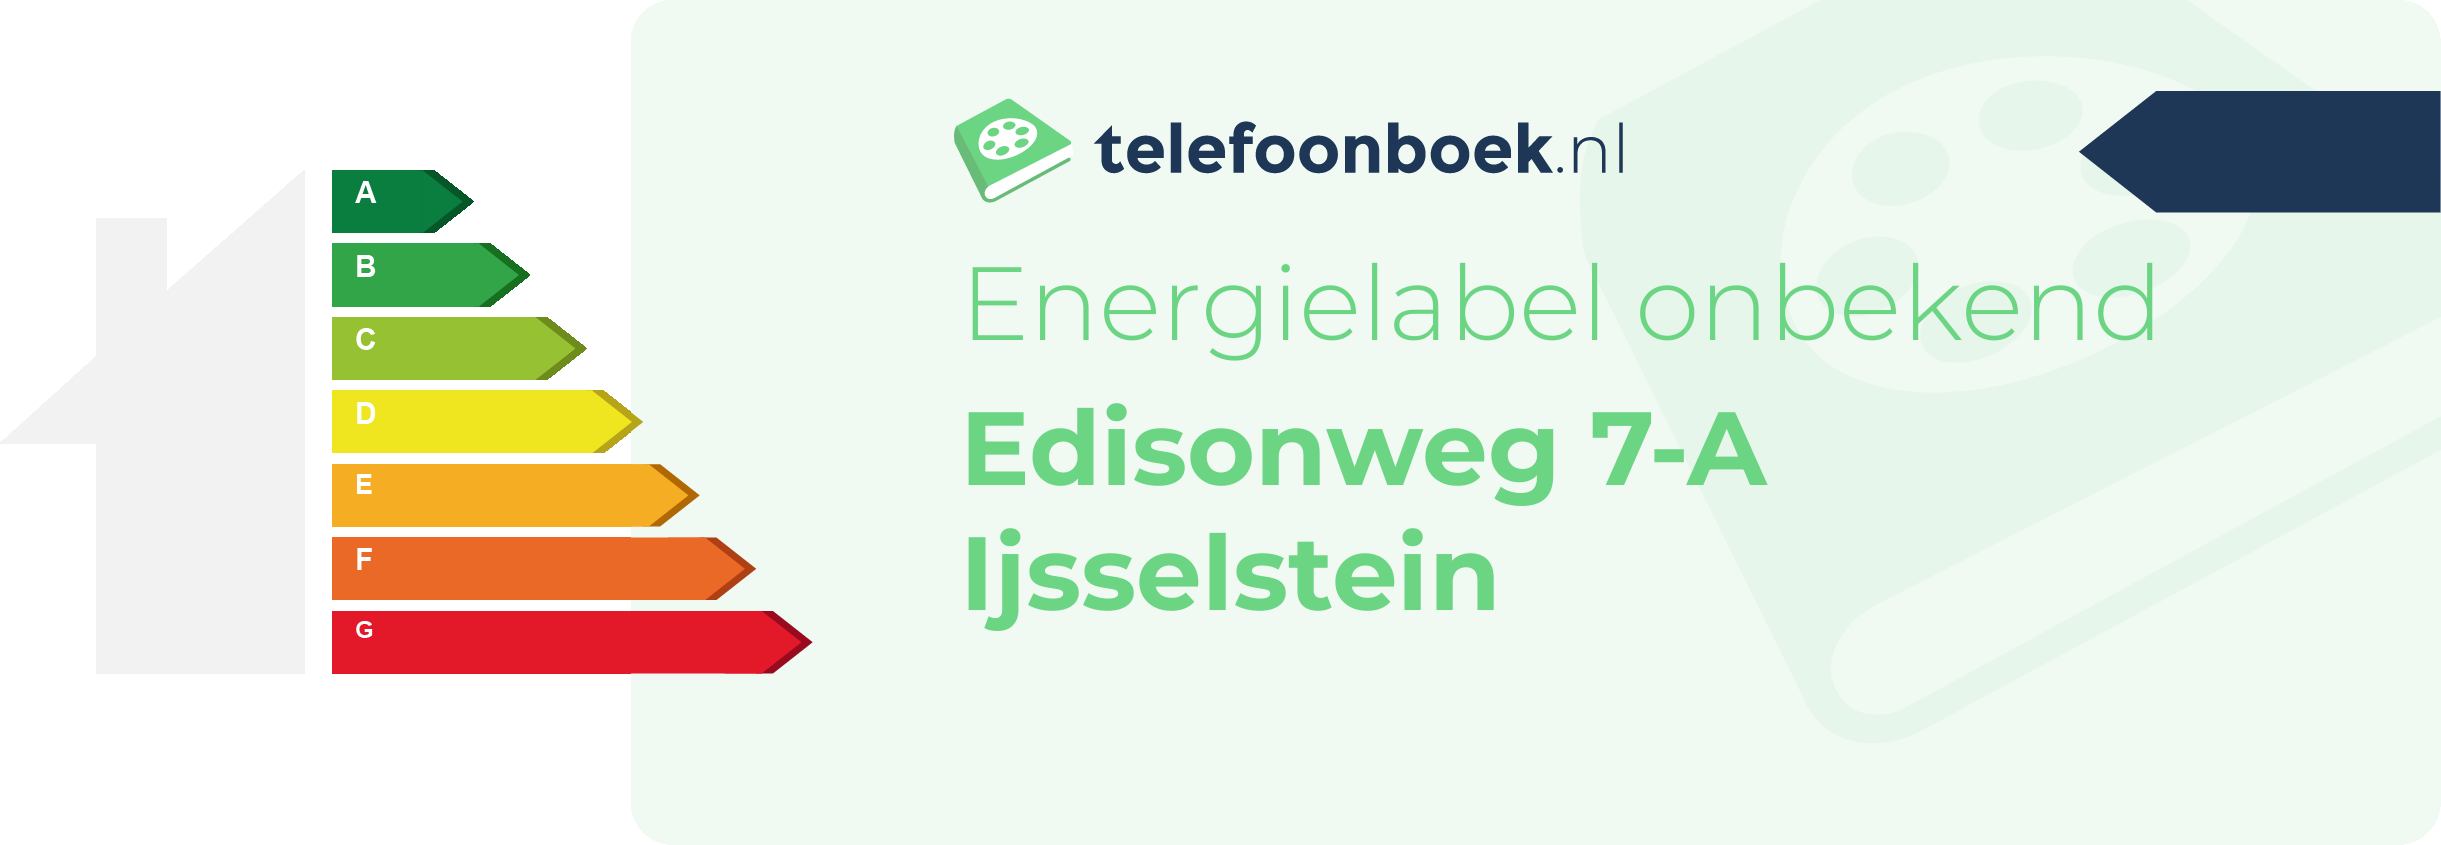 Energielabel Edisonweg 7-A Ijsselstein